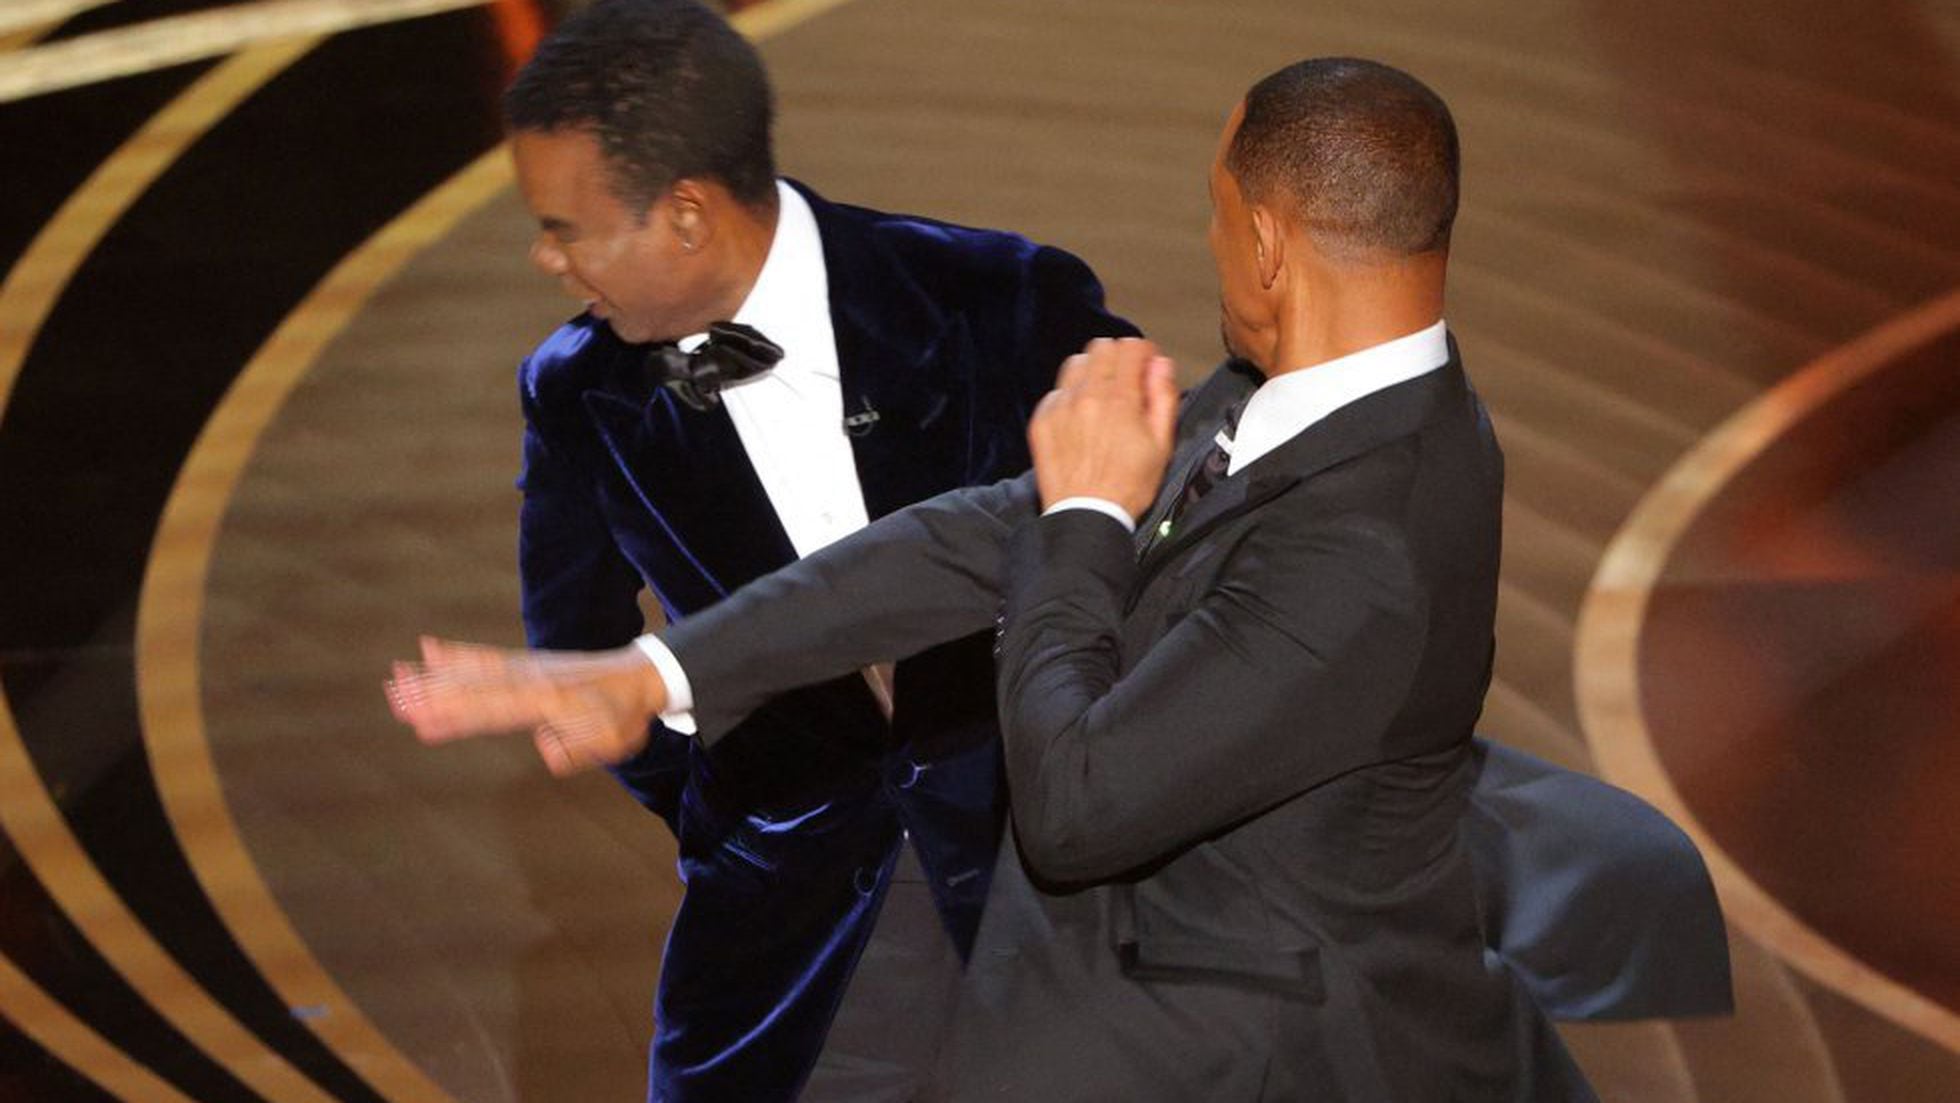 Will Smith a Chris Rock tras la bofetada: “Mi comportamiento fue  inaceptable e indefendible” | Premios Oscar 2022 | EL PAÍS